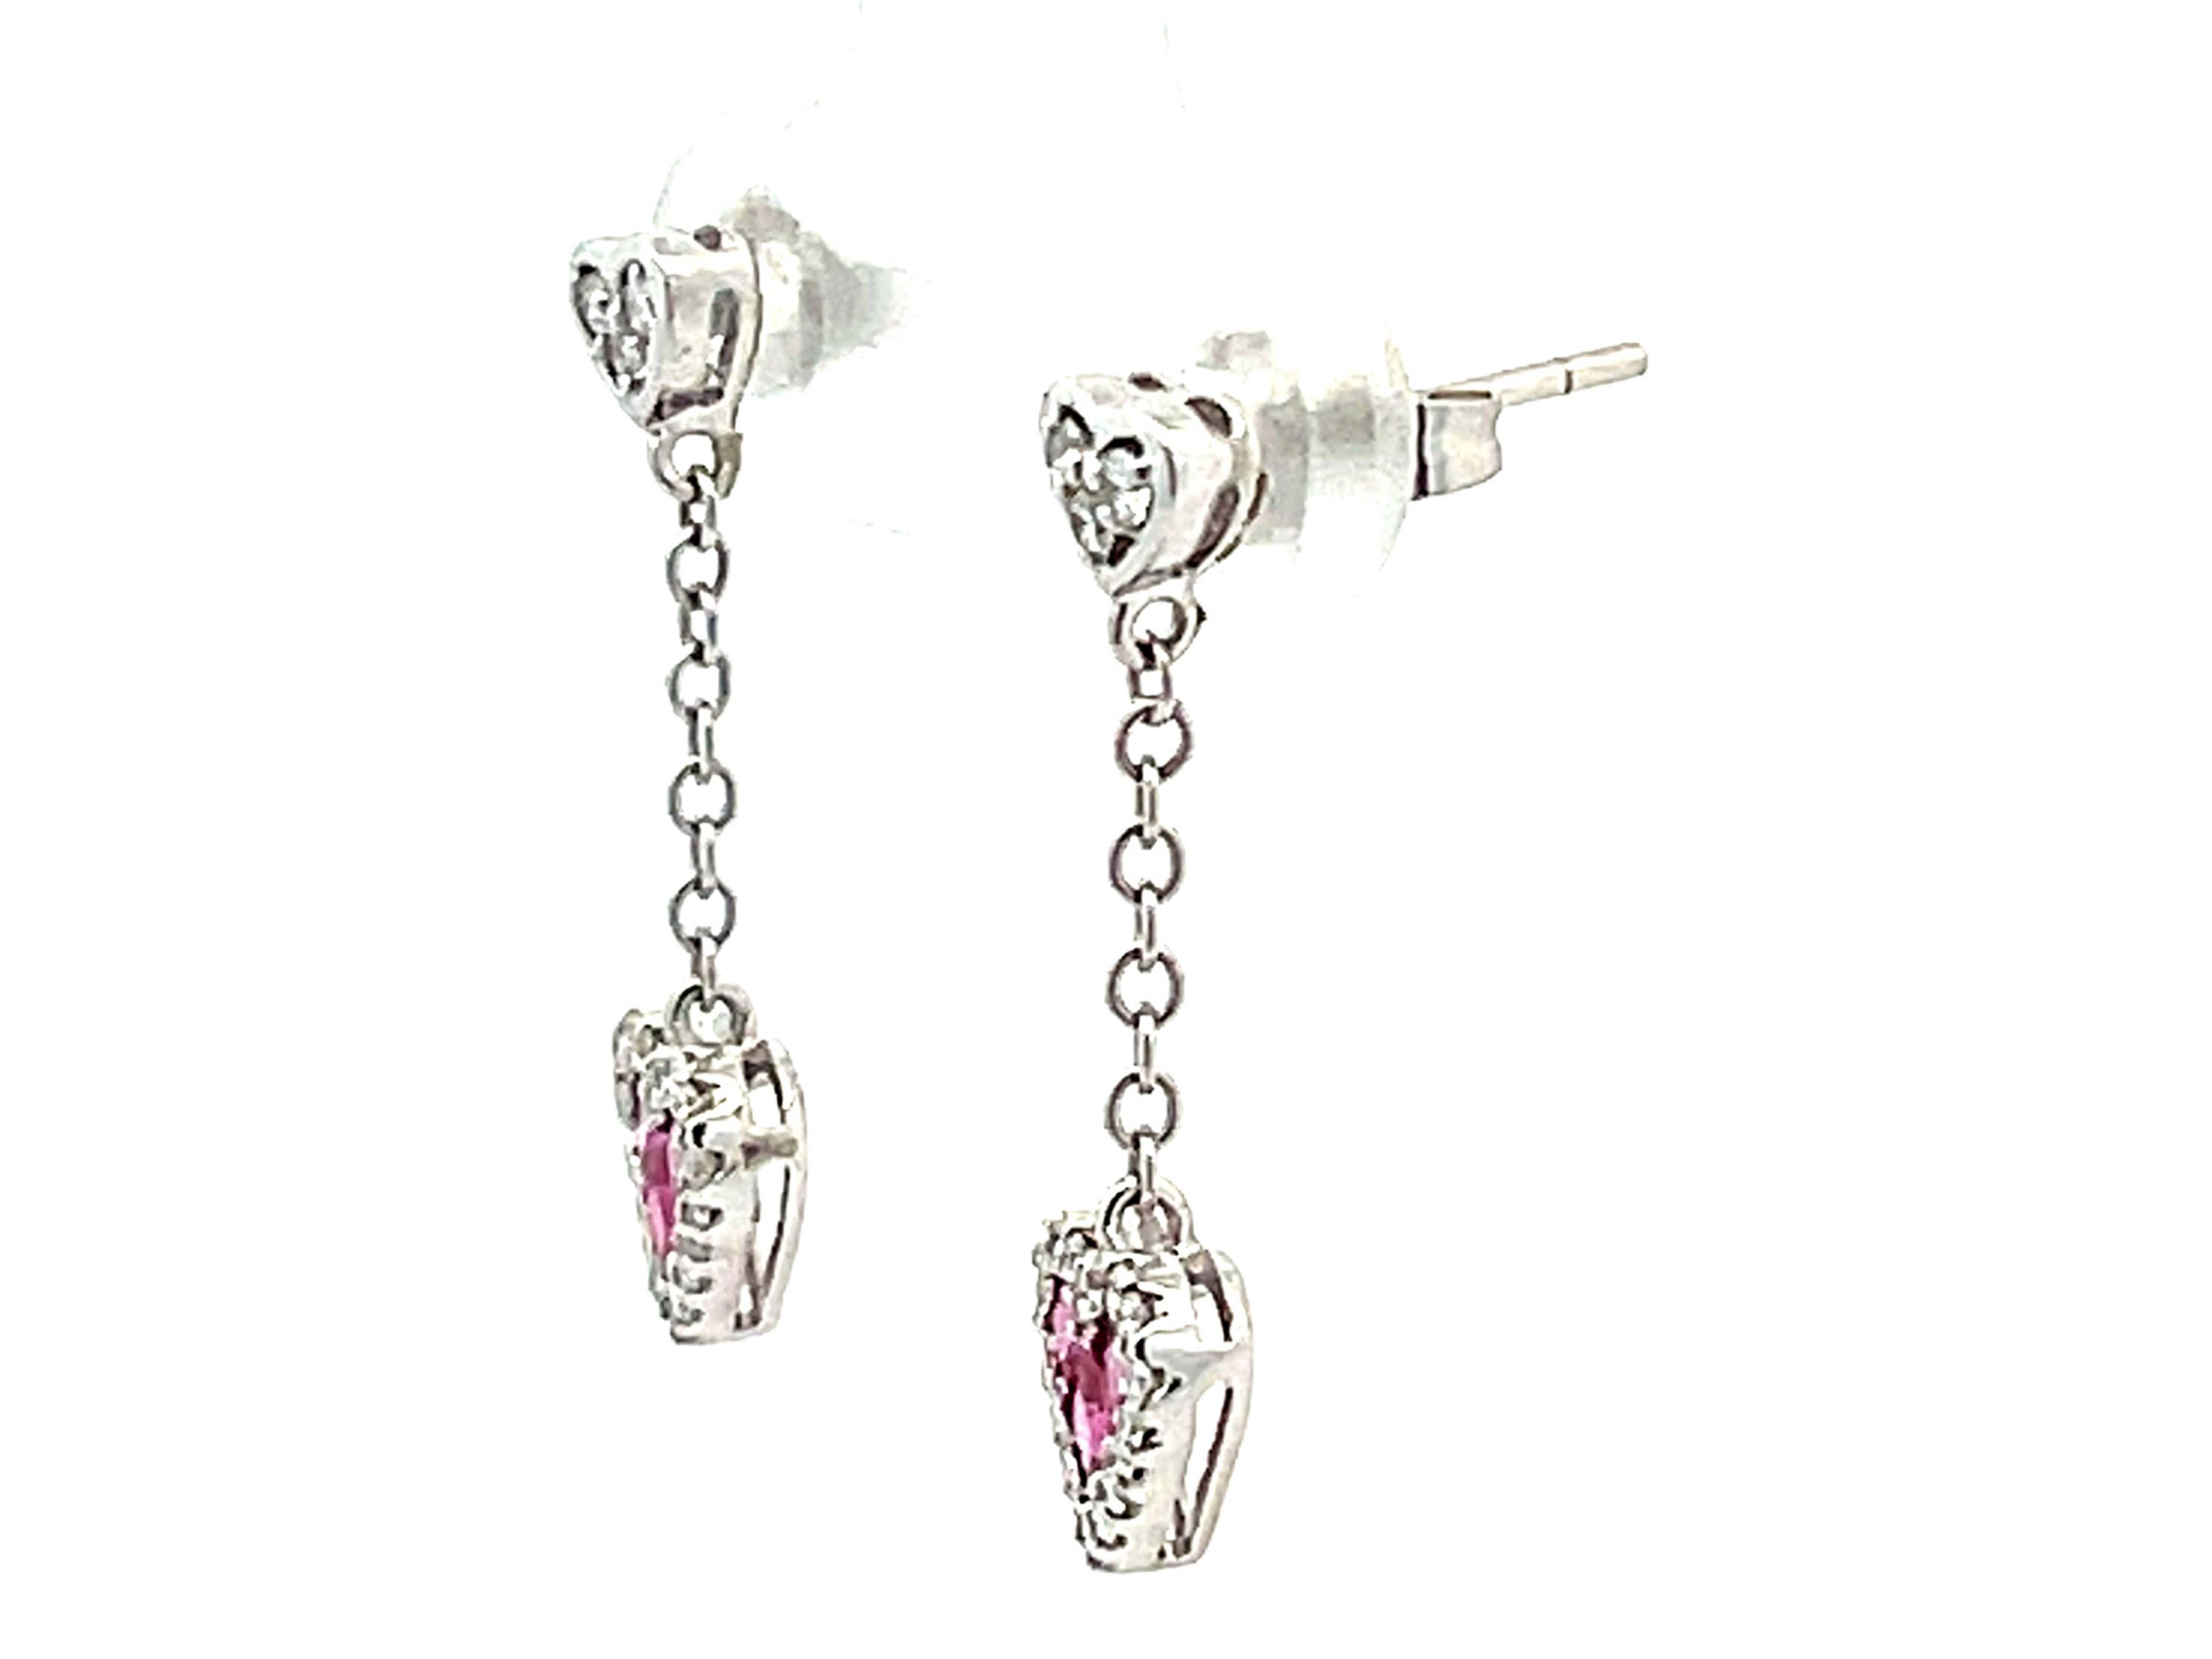 Brilliant Cut Ruby Heart Diamond Dangling Earrings in 14k White Gold For Sale